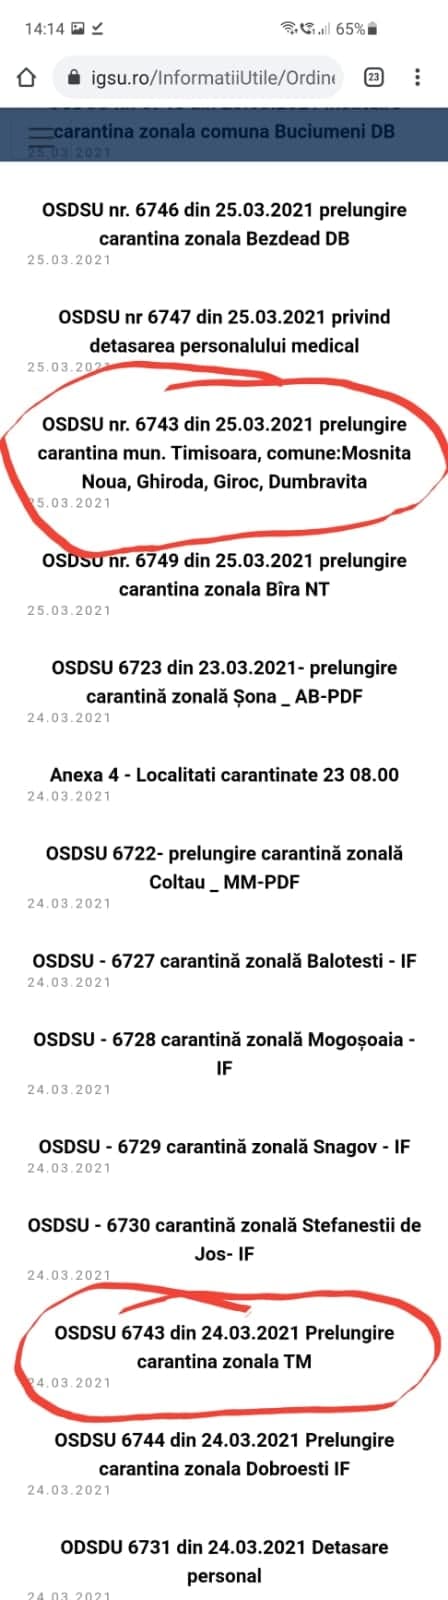 Derută în ordinele IGSU! Locuitorii din Timișoara, Moșnița Nouă, Ghiroda, Giroc şi Dumbrăvița sunt afectaţi